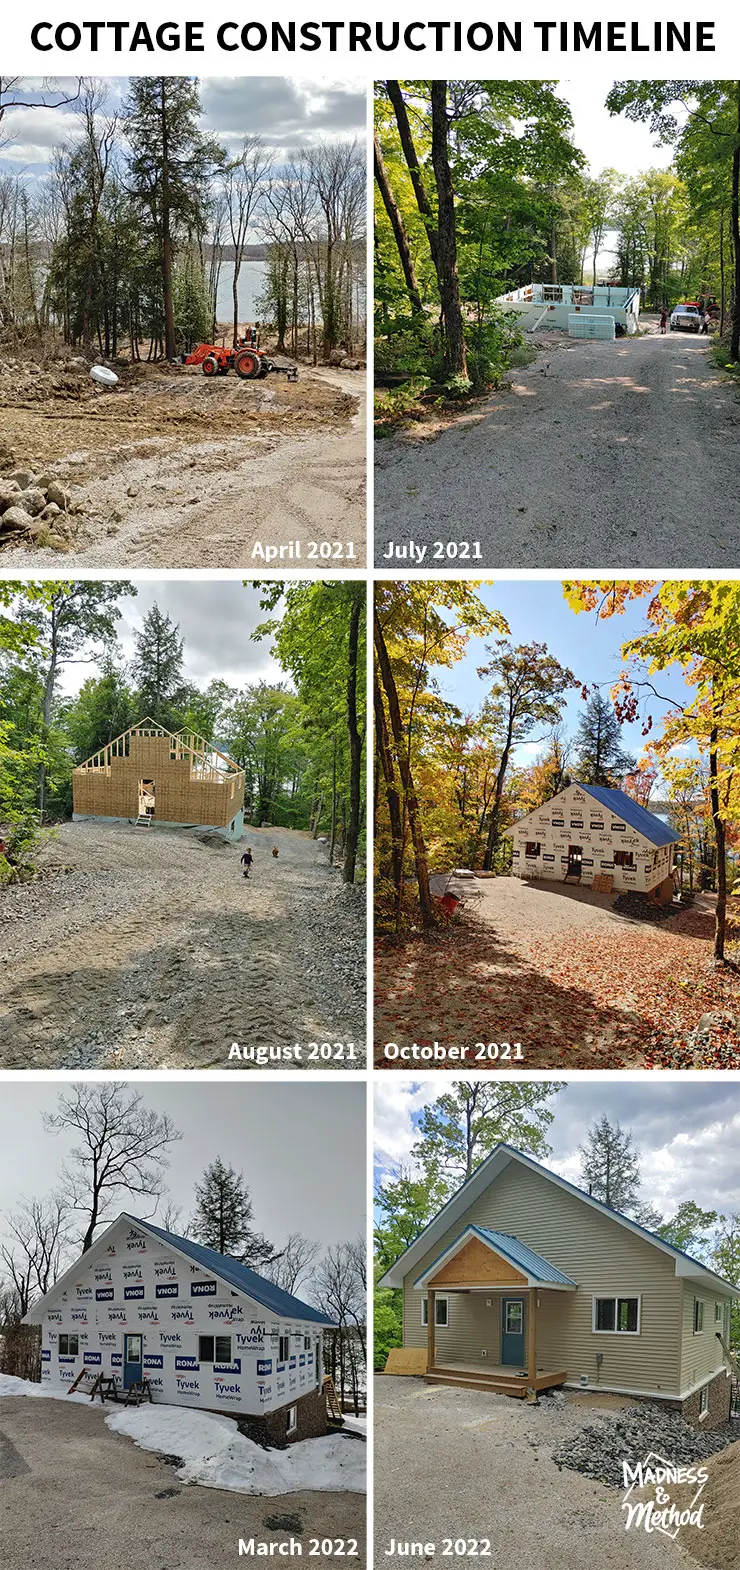 cottage construction timeline images